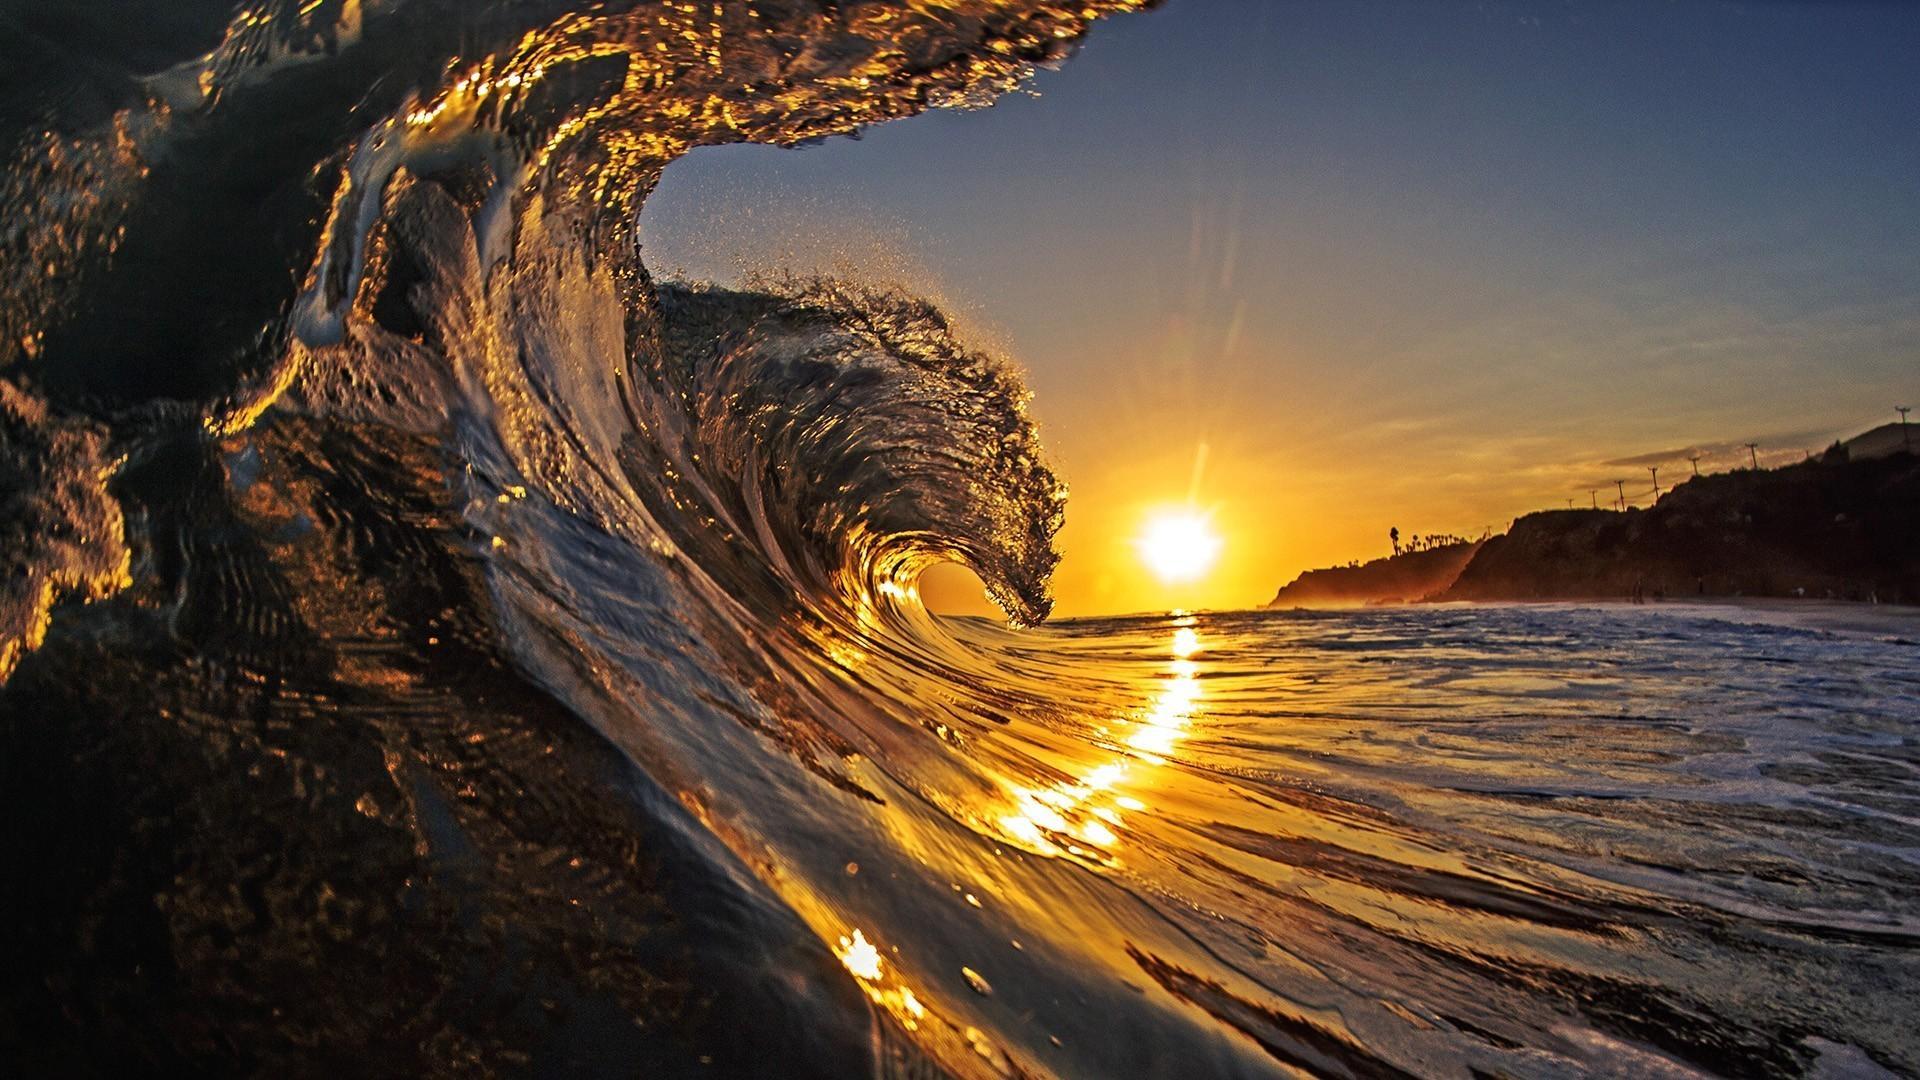 Sunset Surf HD desktop wallpaper, Widescreen, High Definition